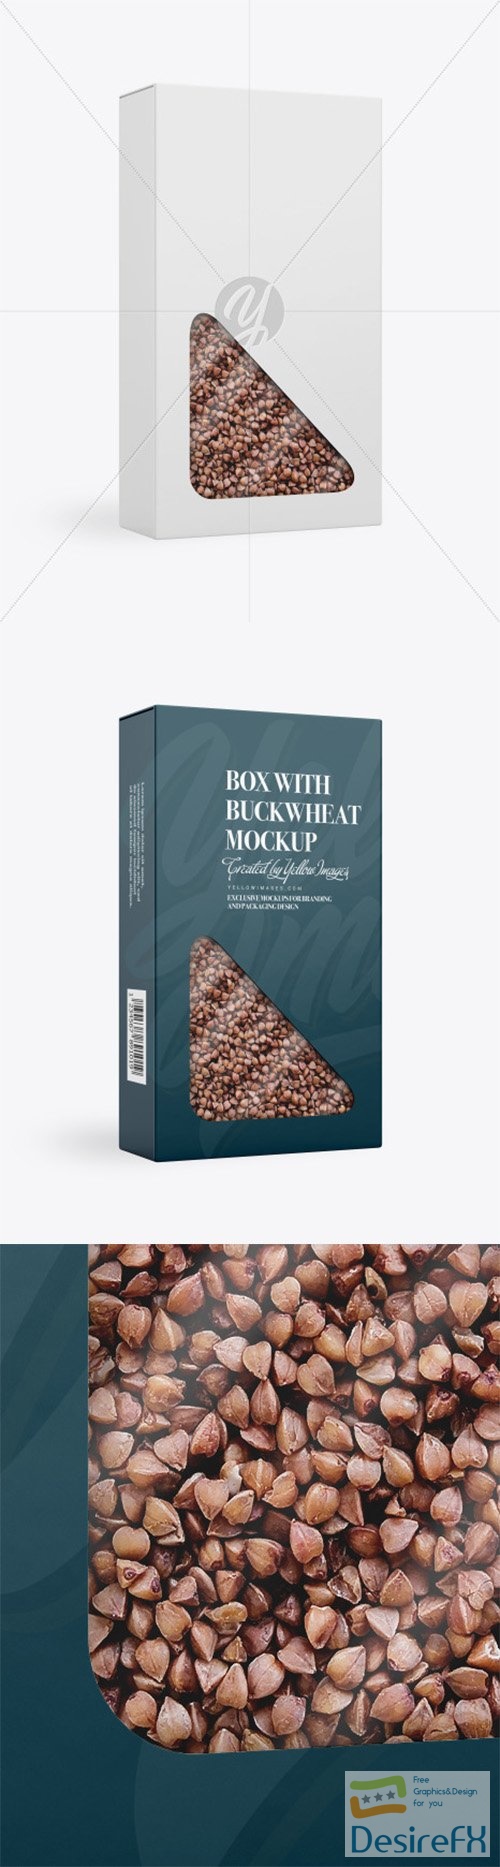 Box with Buckwheat Mockup 78390 TIF